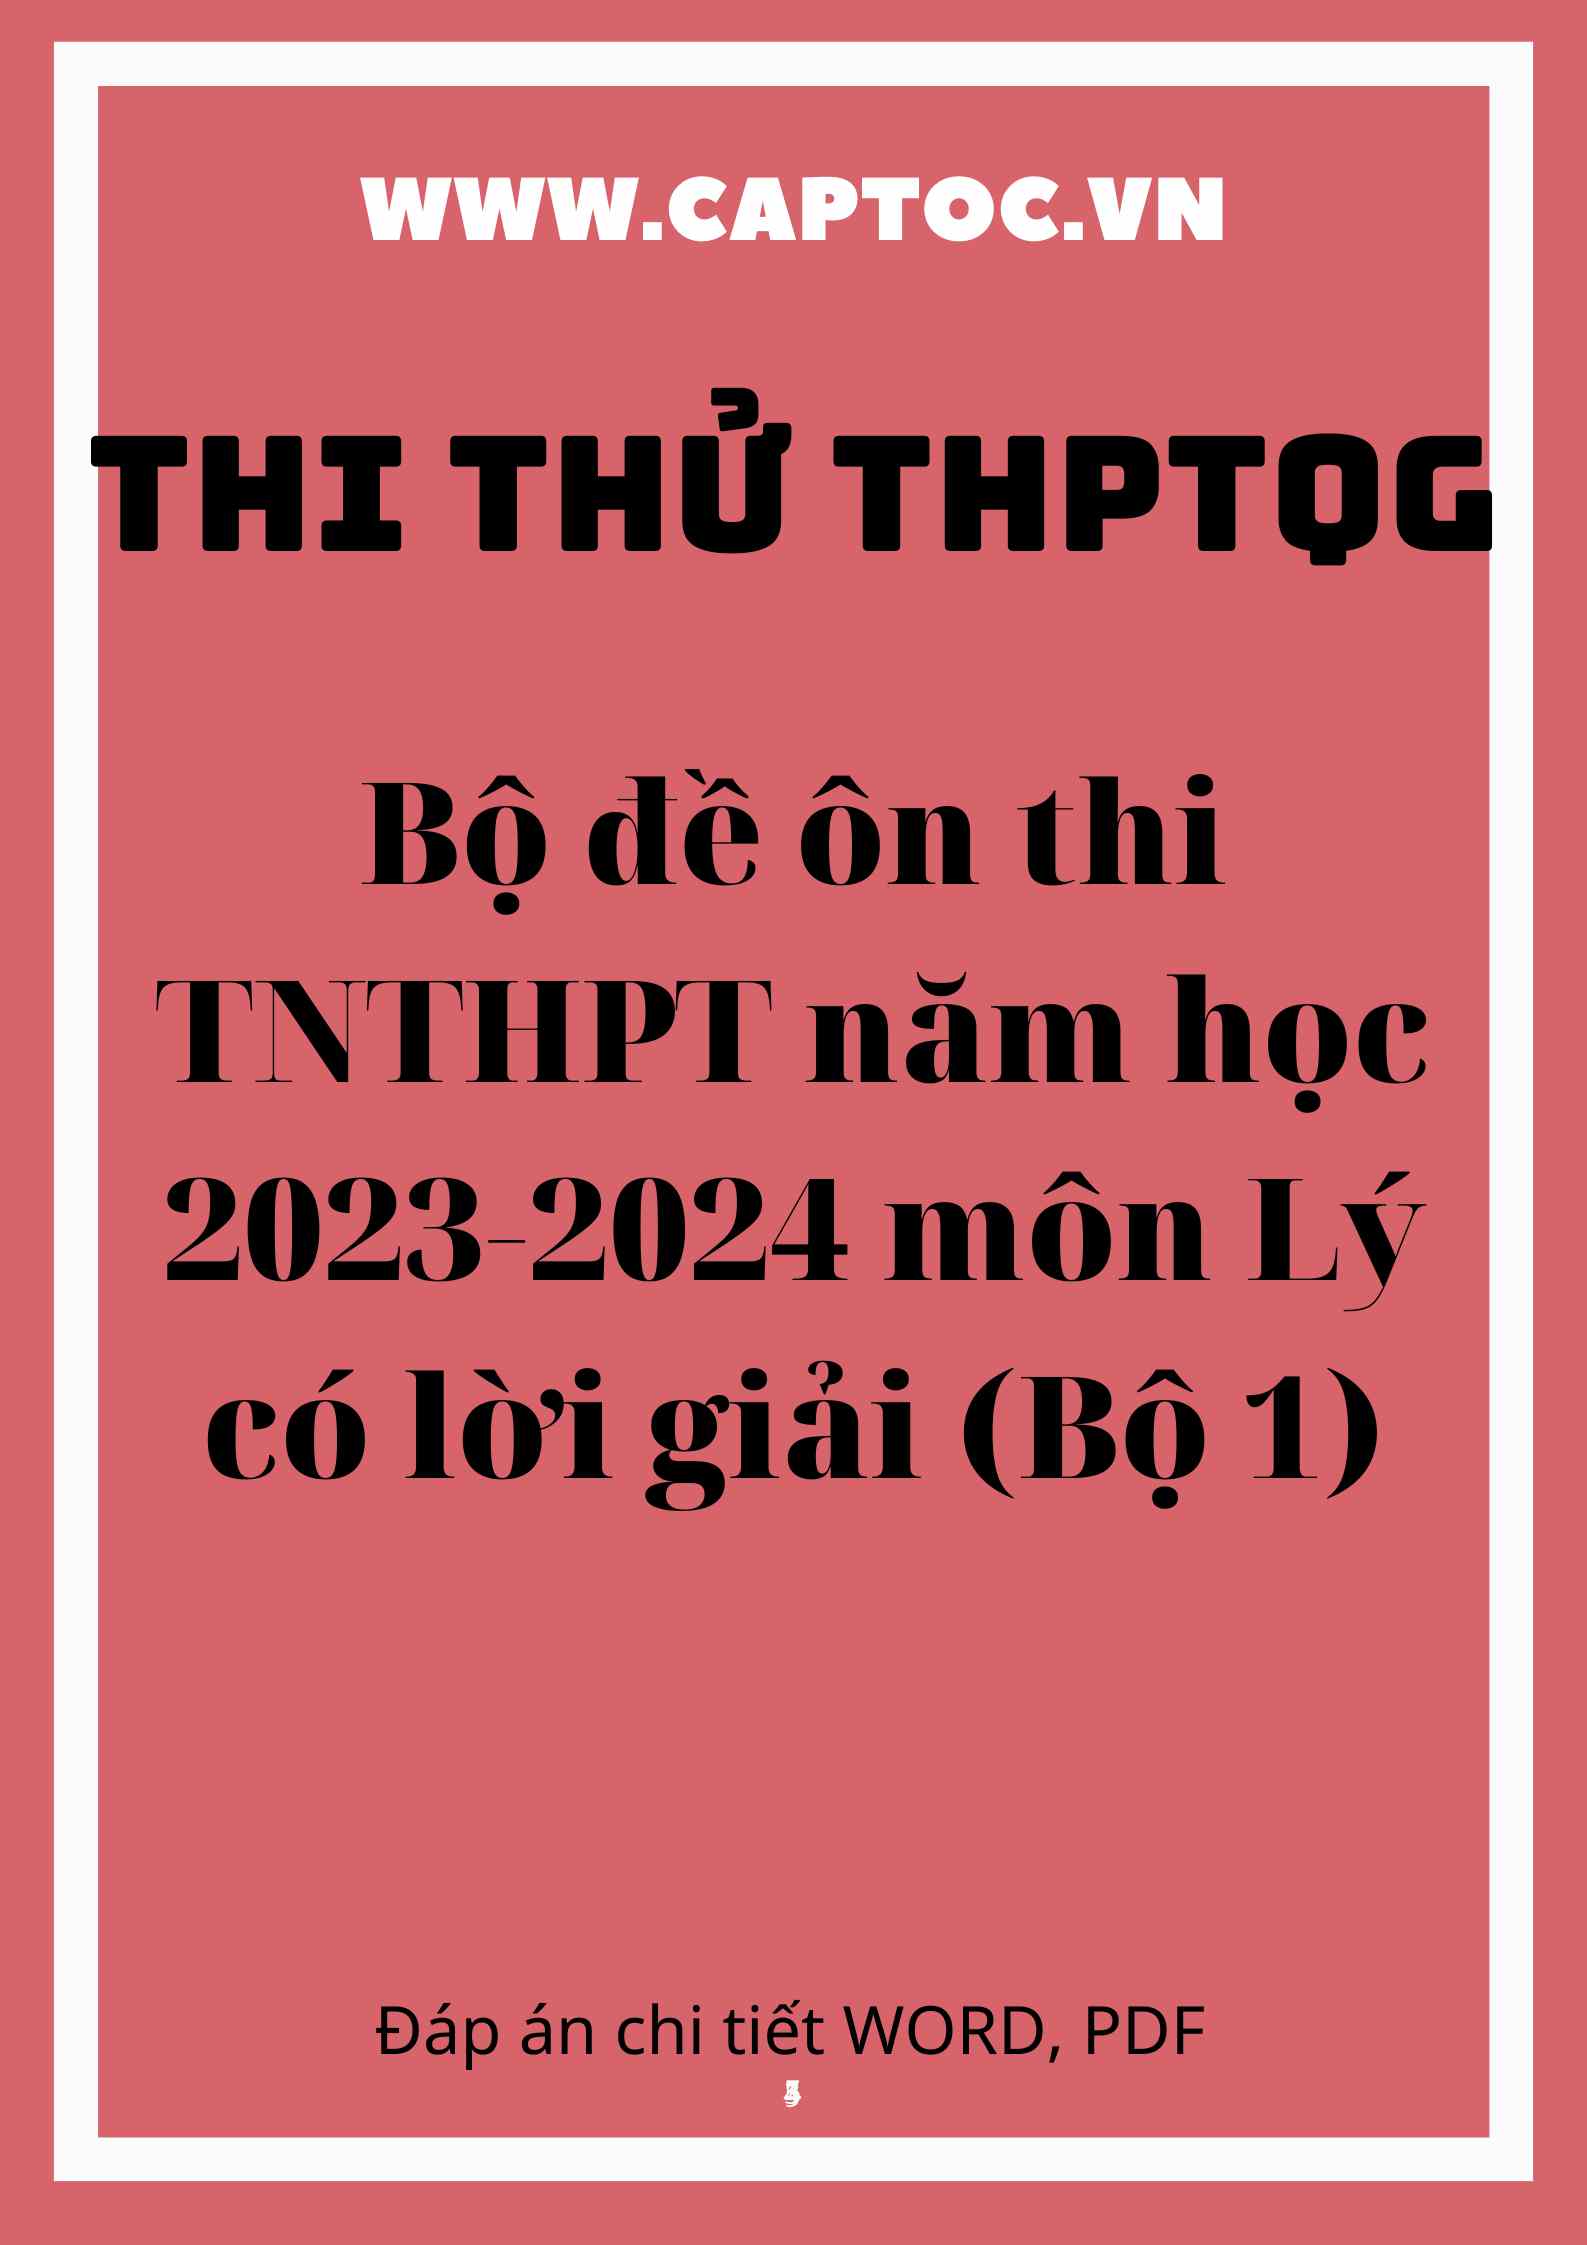 Bộ đề ôn thi TNTHPT năm học 2023-2024 môn Lý có lời giải (Bộ 1)